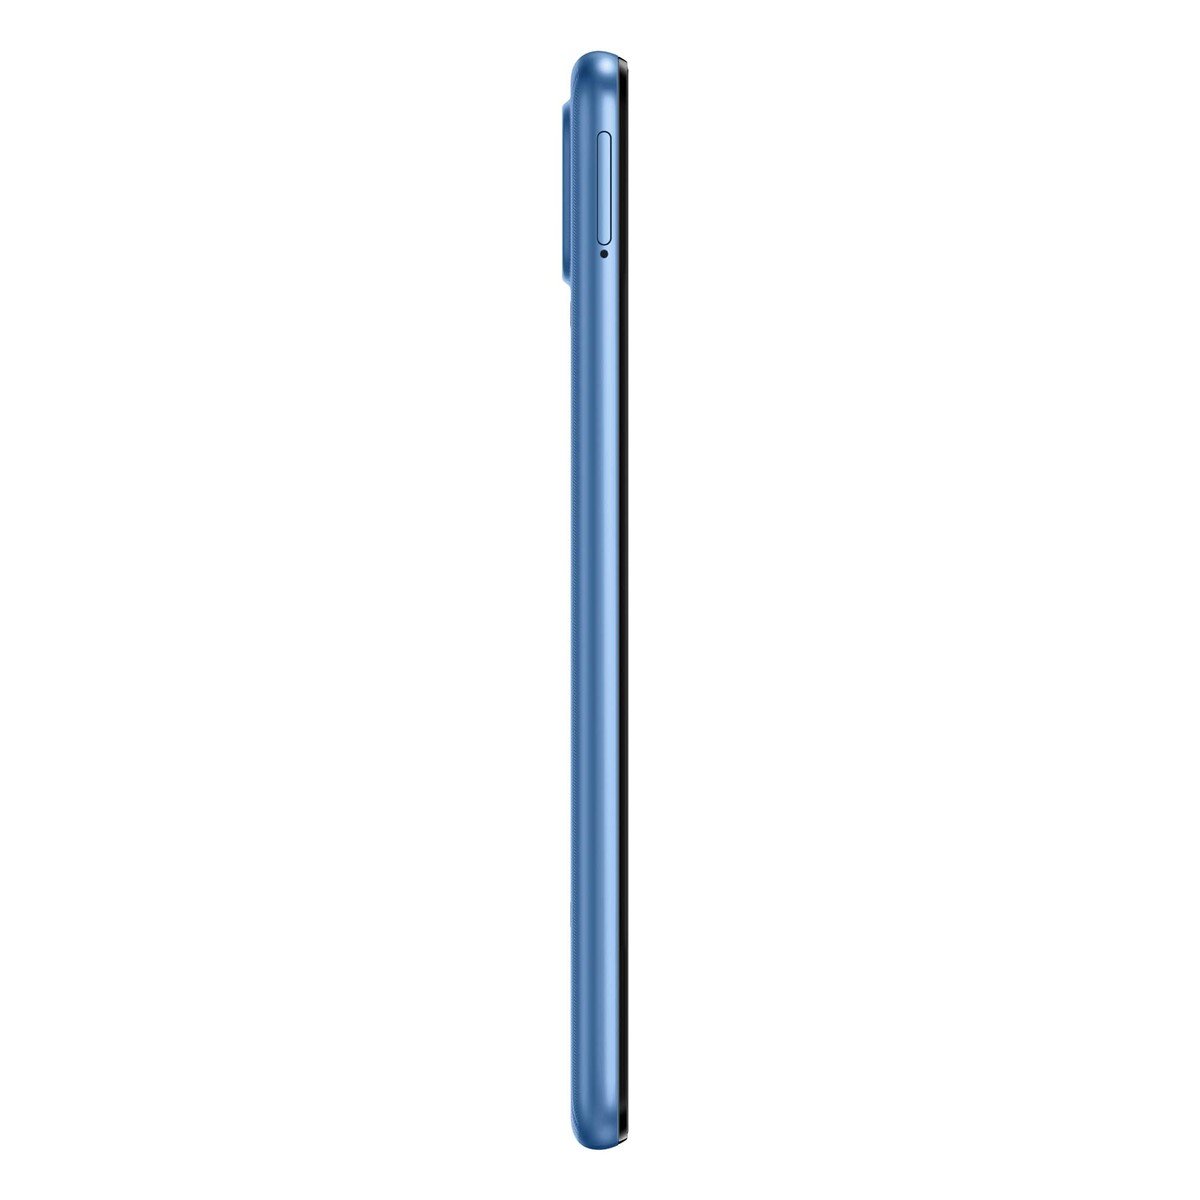 Samsung Galaxy M22 SM-M225FLBHMEA 128GB Blue